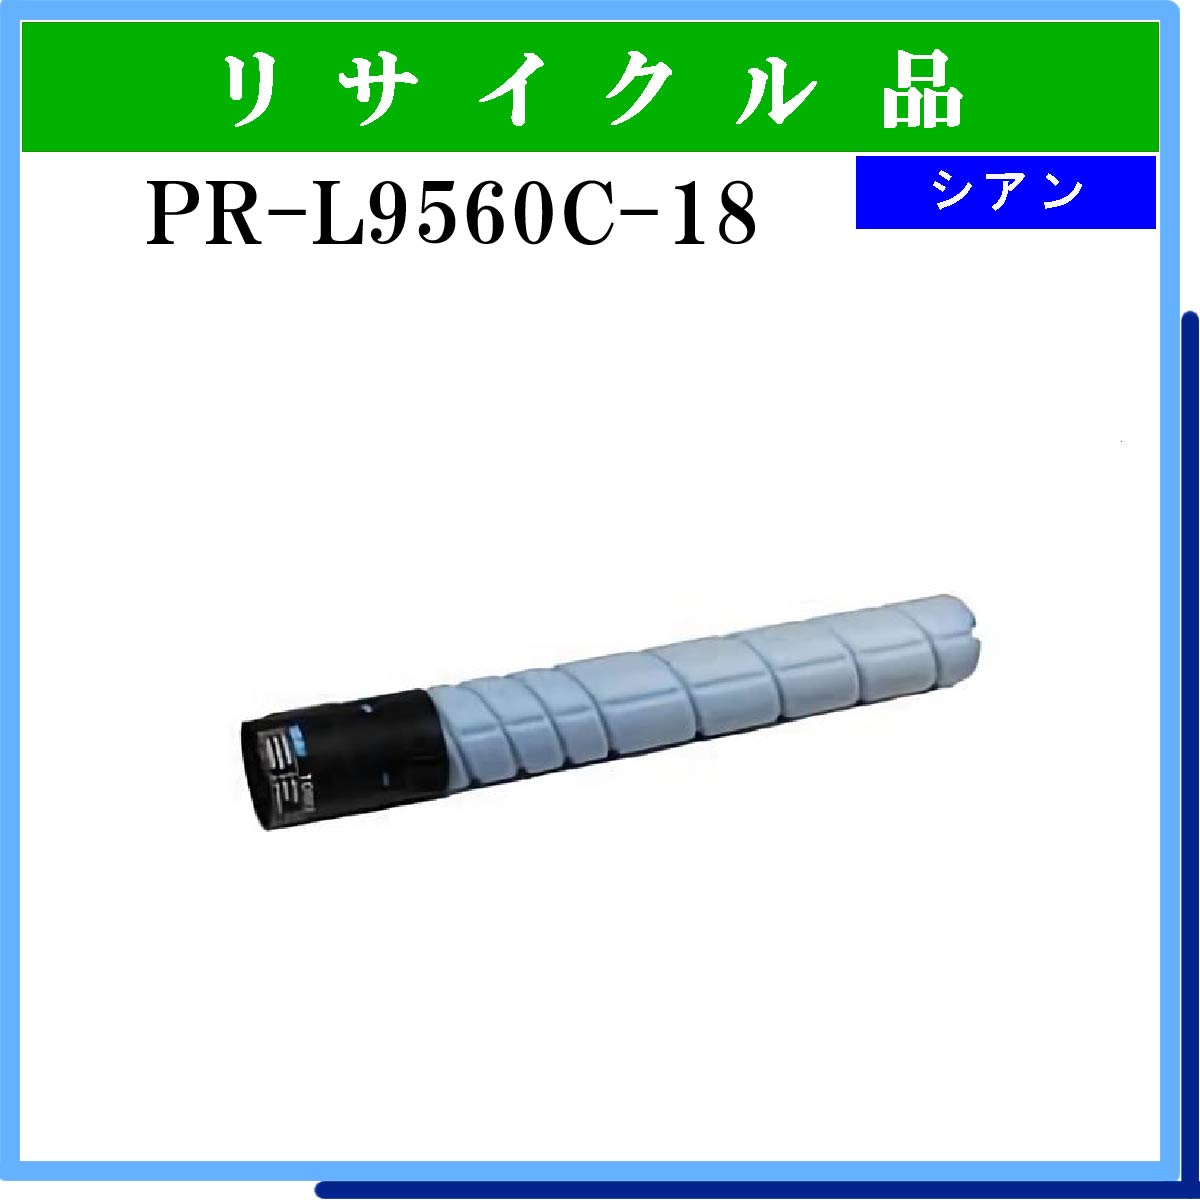 PR-L9560C-18